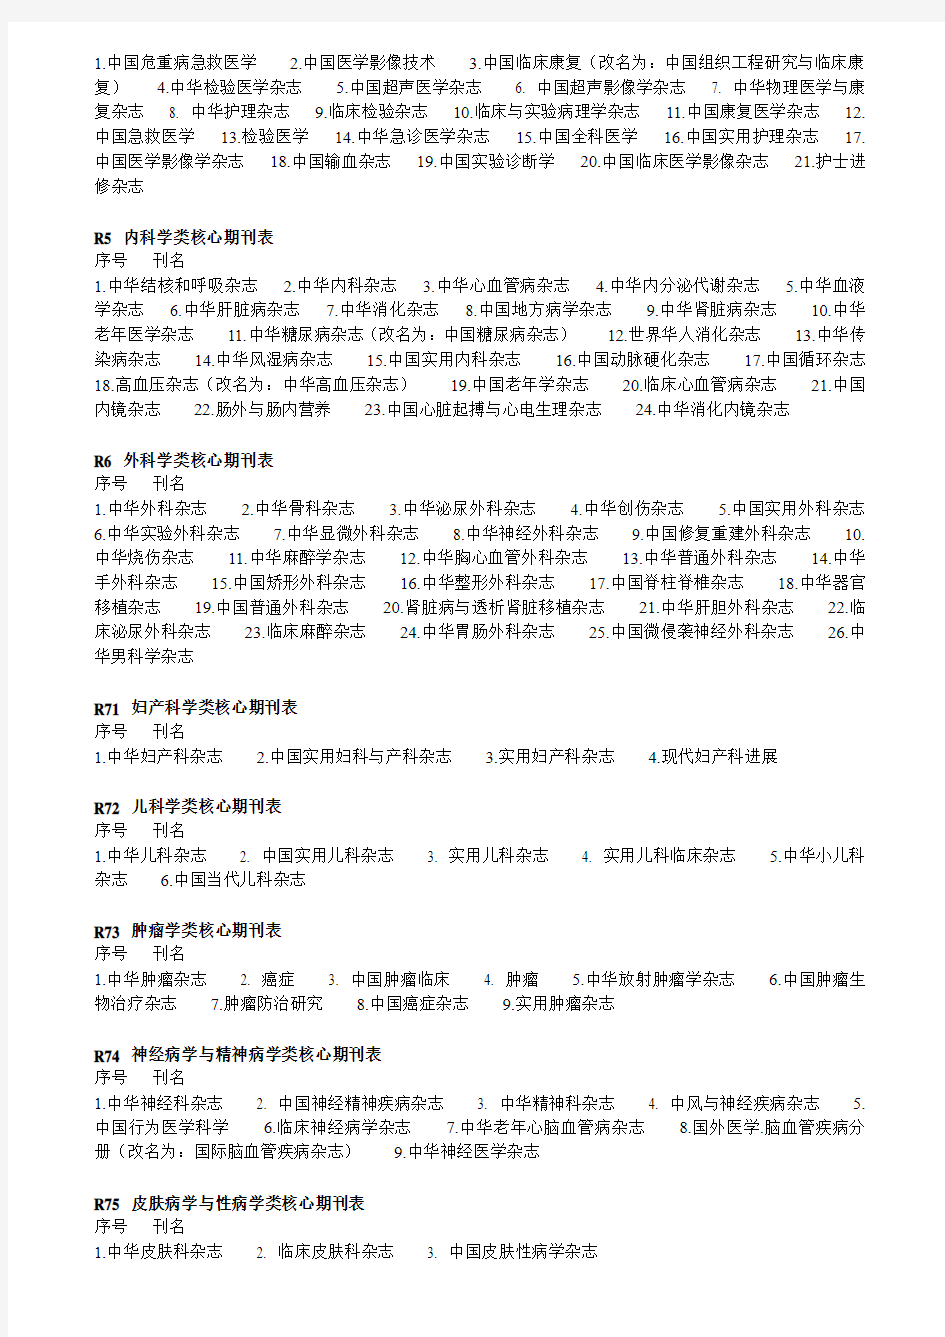 11中文核心期刊目录总览(2008年版)